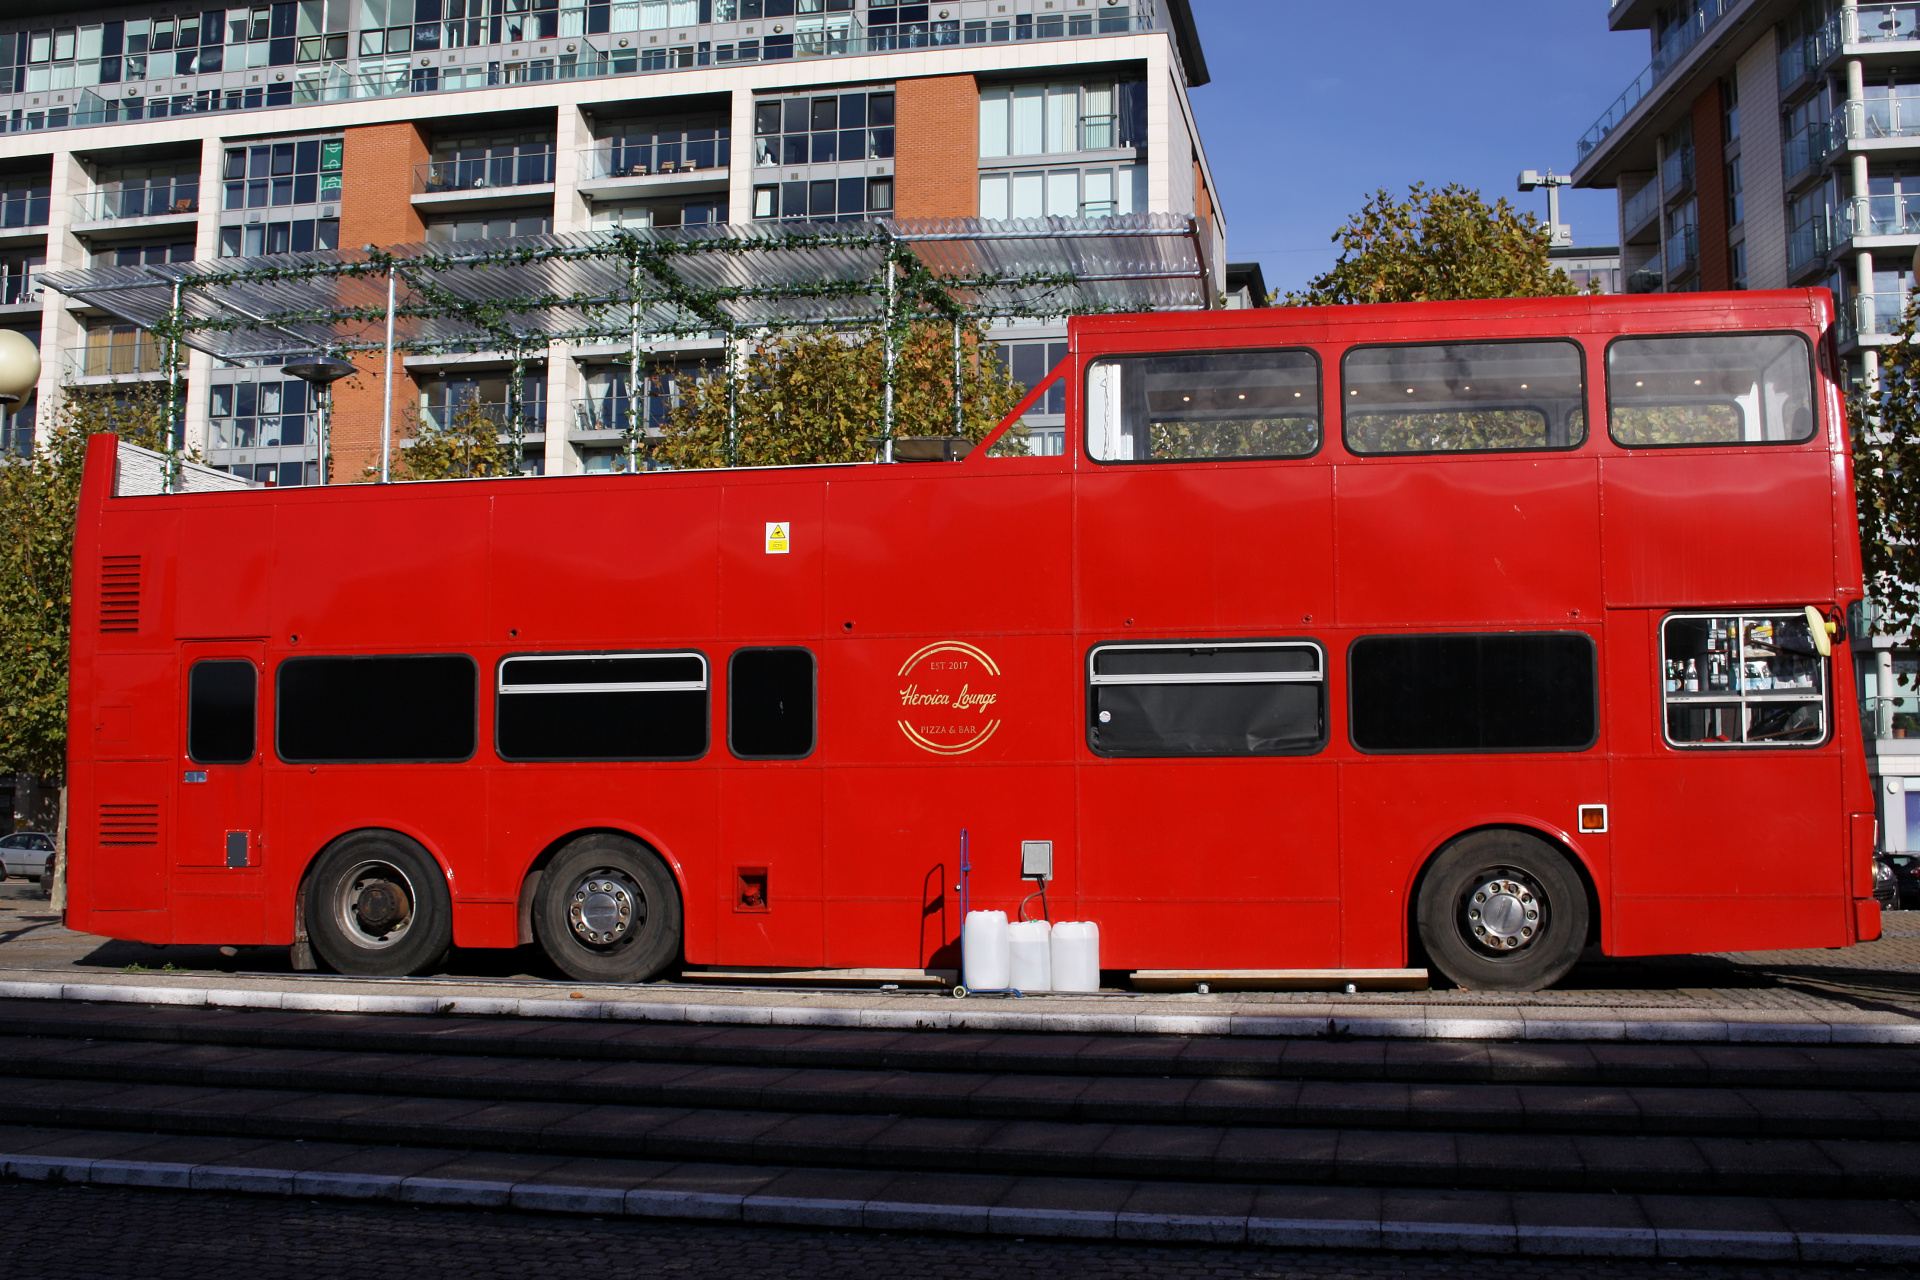 MCW (Super) Metrobus MkII (Heroica Lounge) (Podróże » Londyn » Pojazdy)